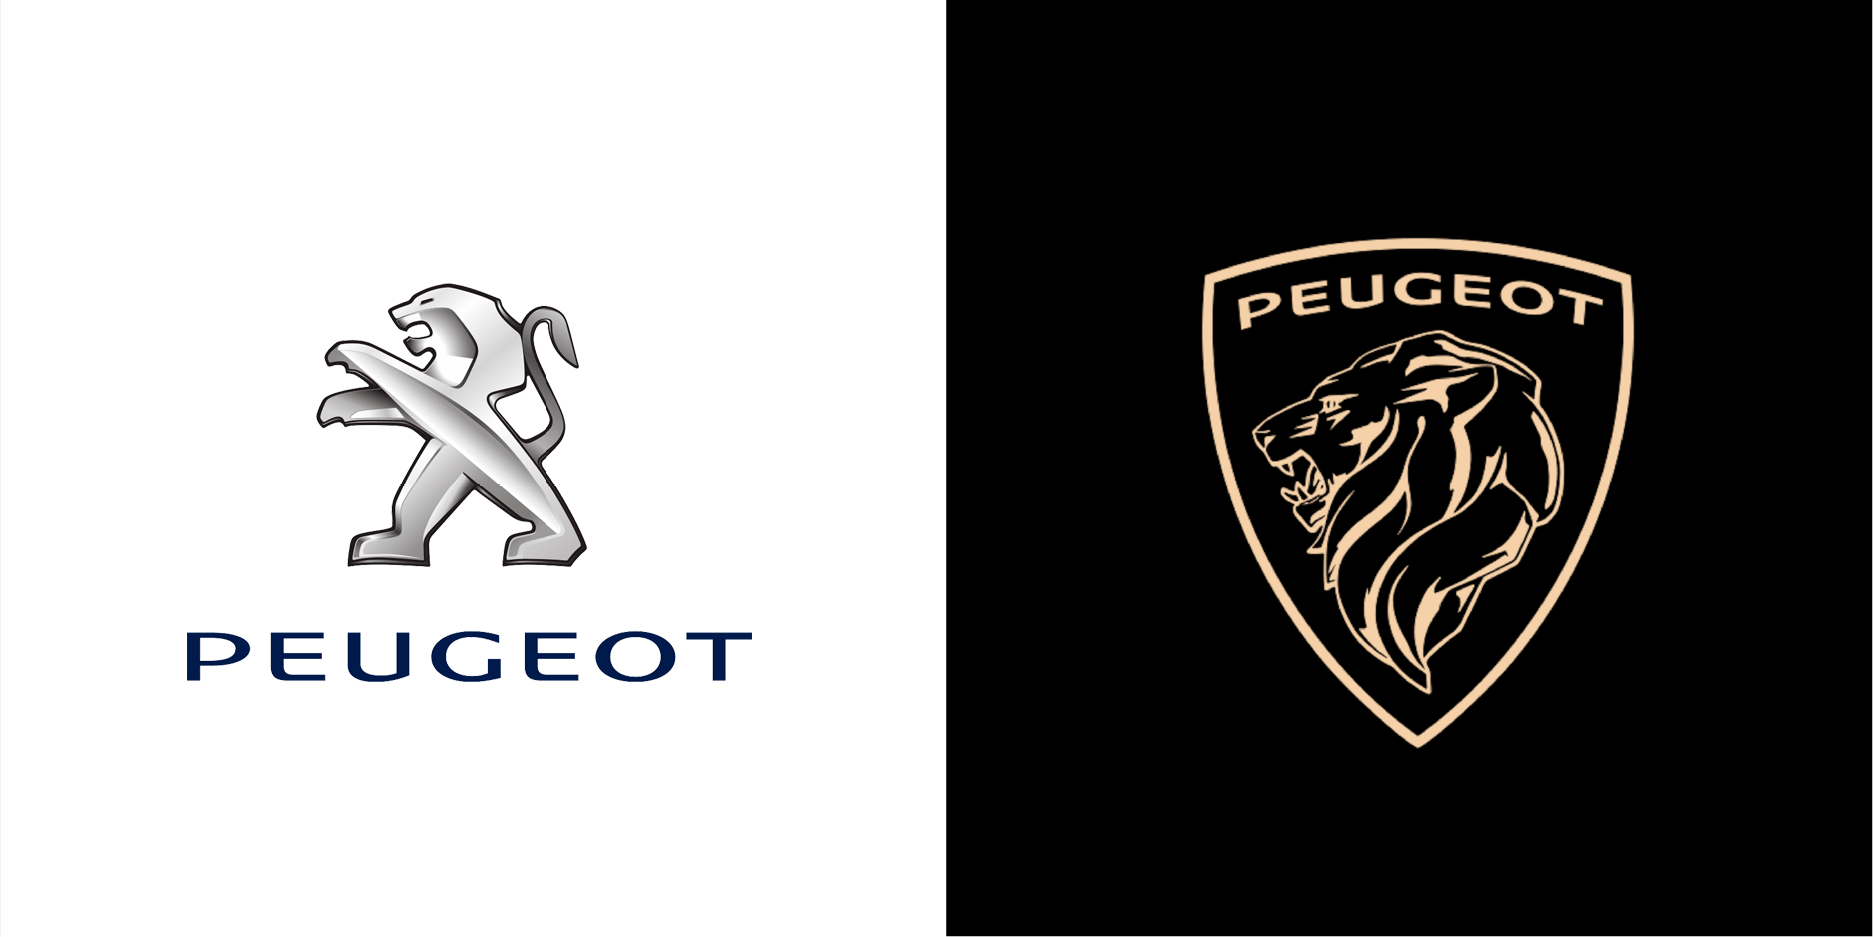 La marca Peugeot se renueva y lanza nuevo diseño de logotipo 2021